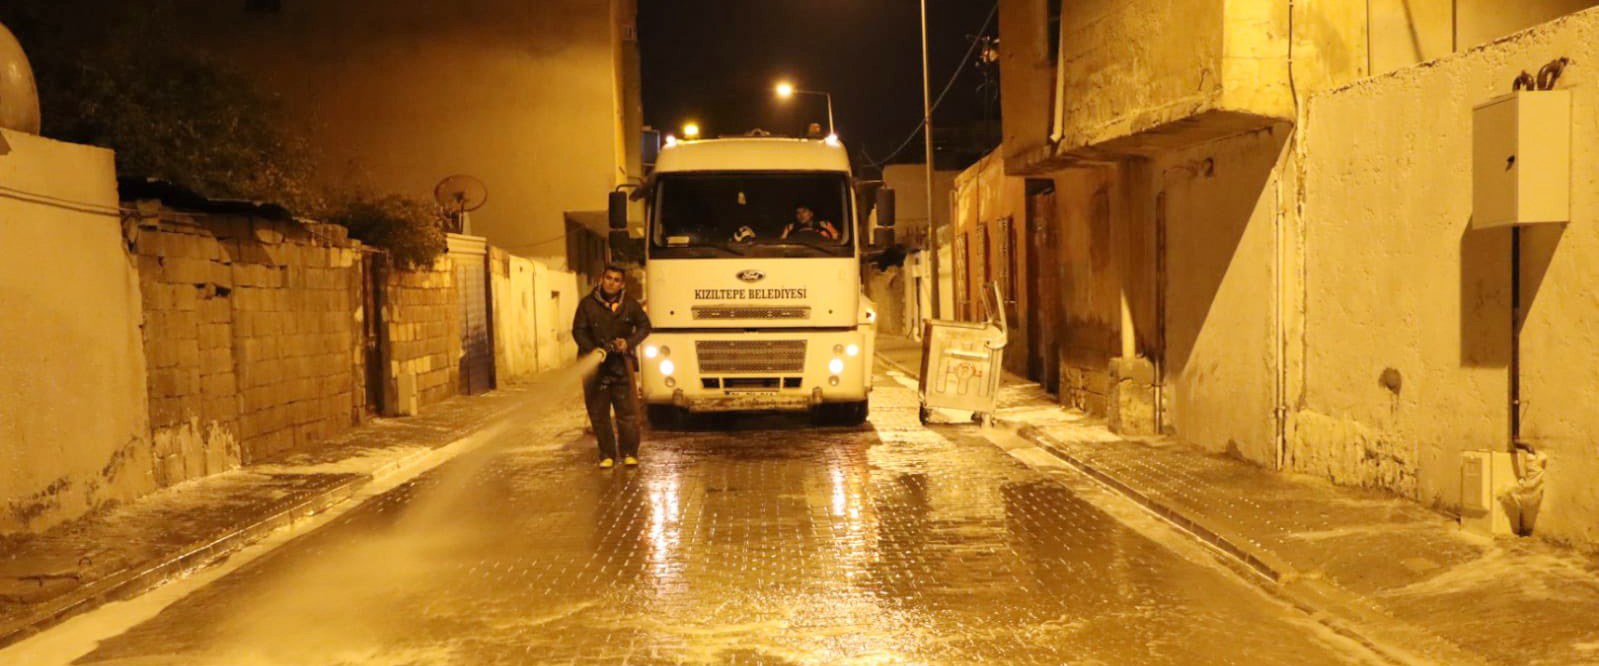 Kızıltepe Belediyesi yol yıkama çalışmalarına hız verdi